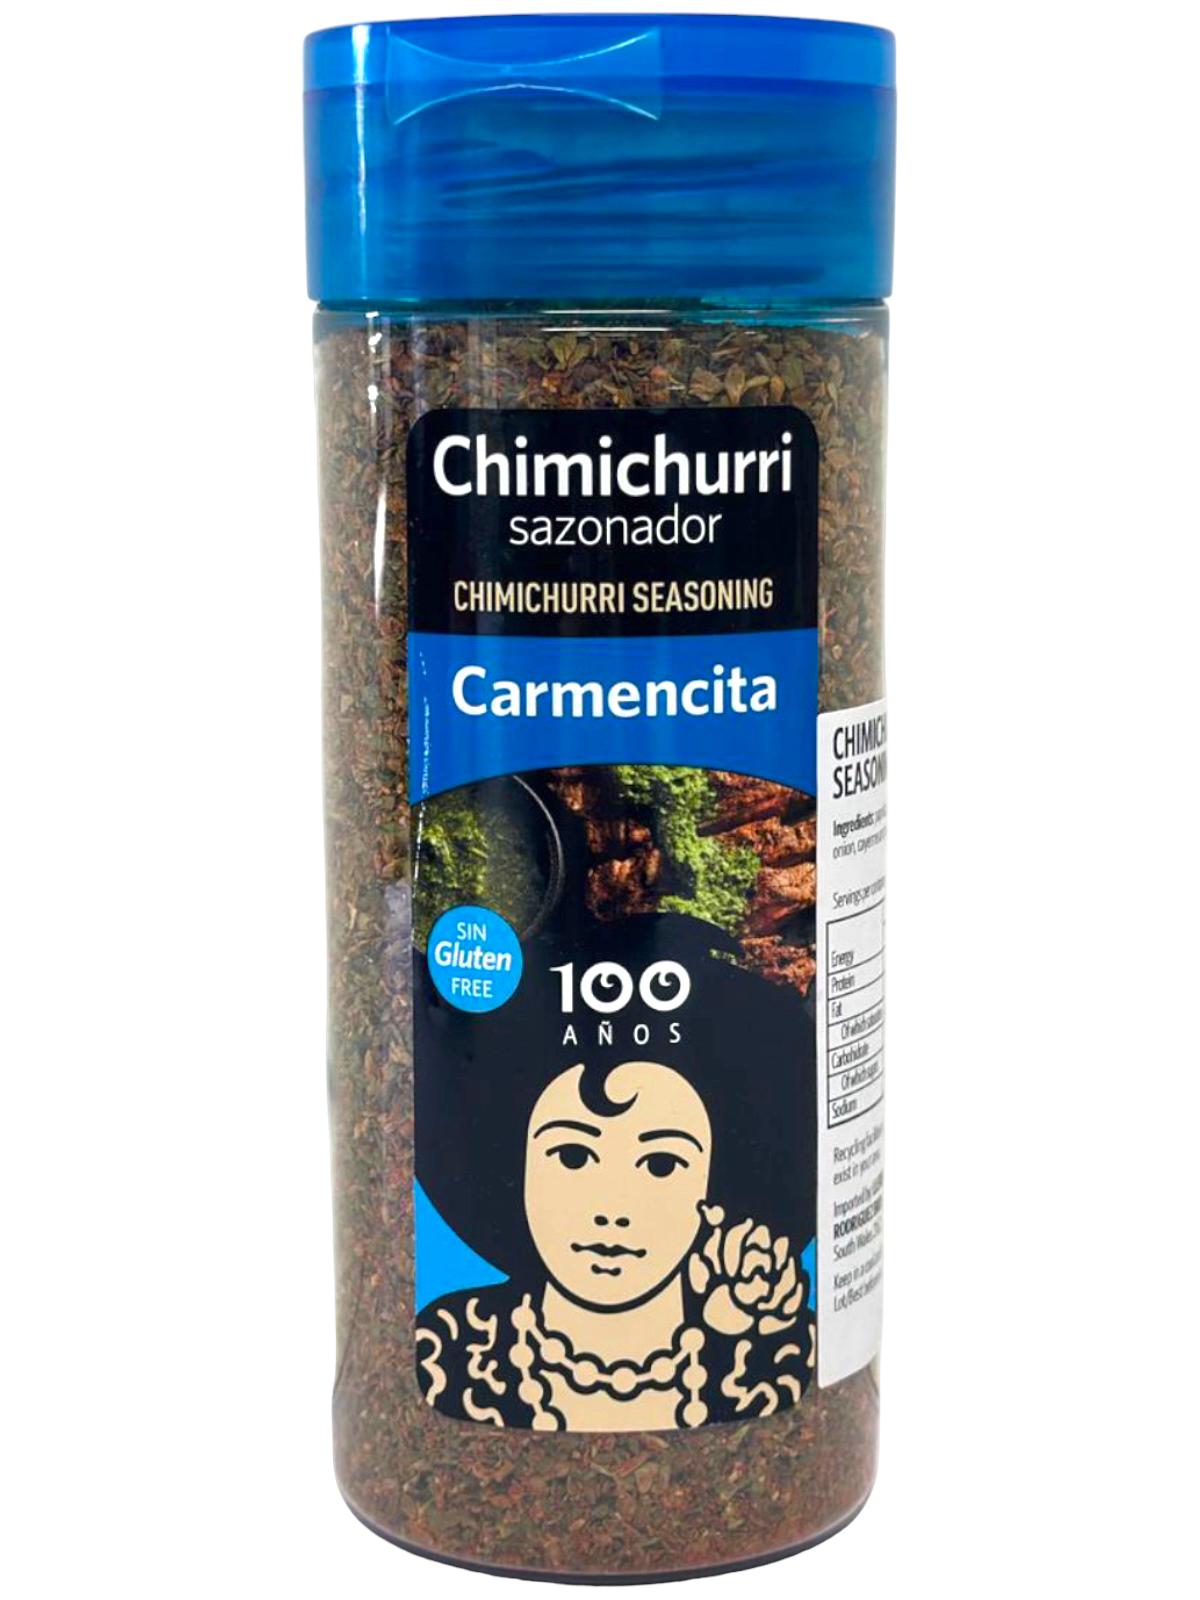 Carmencita Chimichurri Seasoning 110g - Twin Pack 220g total